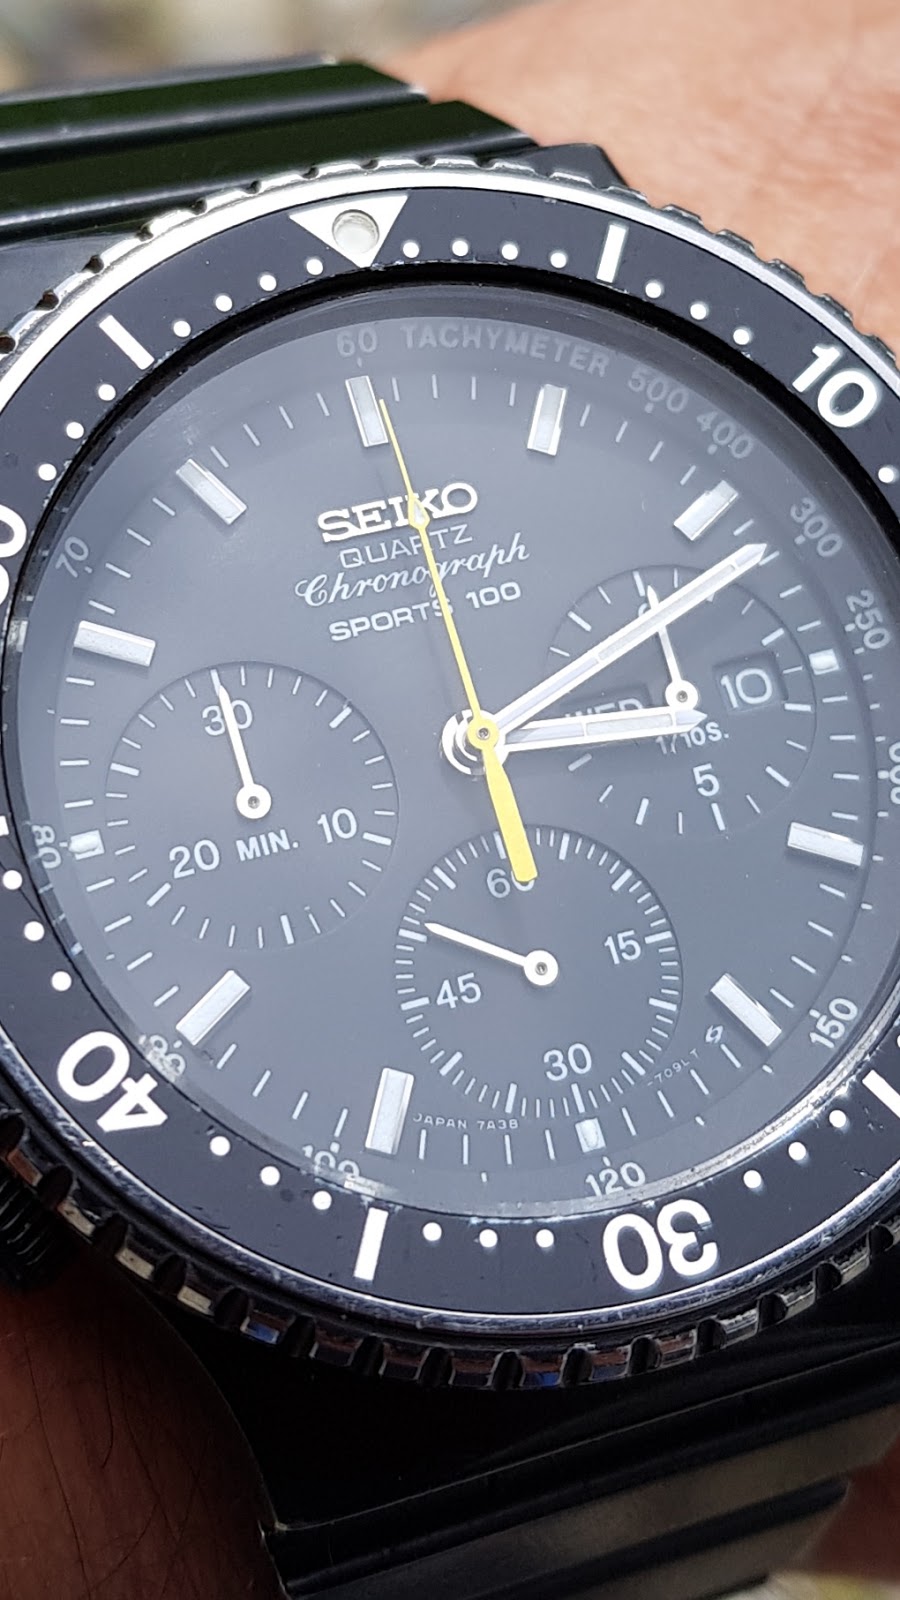 SEIKO 7A38-7080 CHRONO PVD - Il primo cronografo al mondo con affissione  analogica e complicazione day date anno 1984 [Nuovo arrivo]